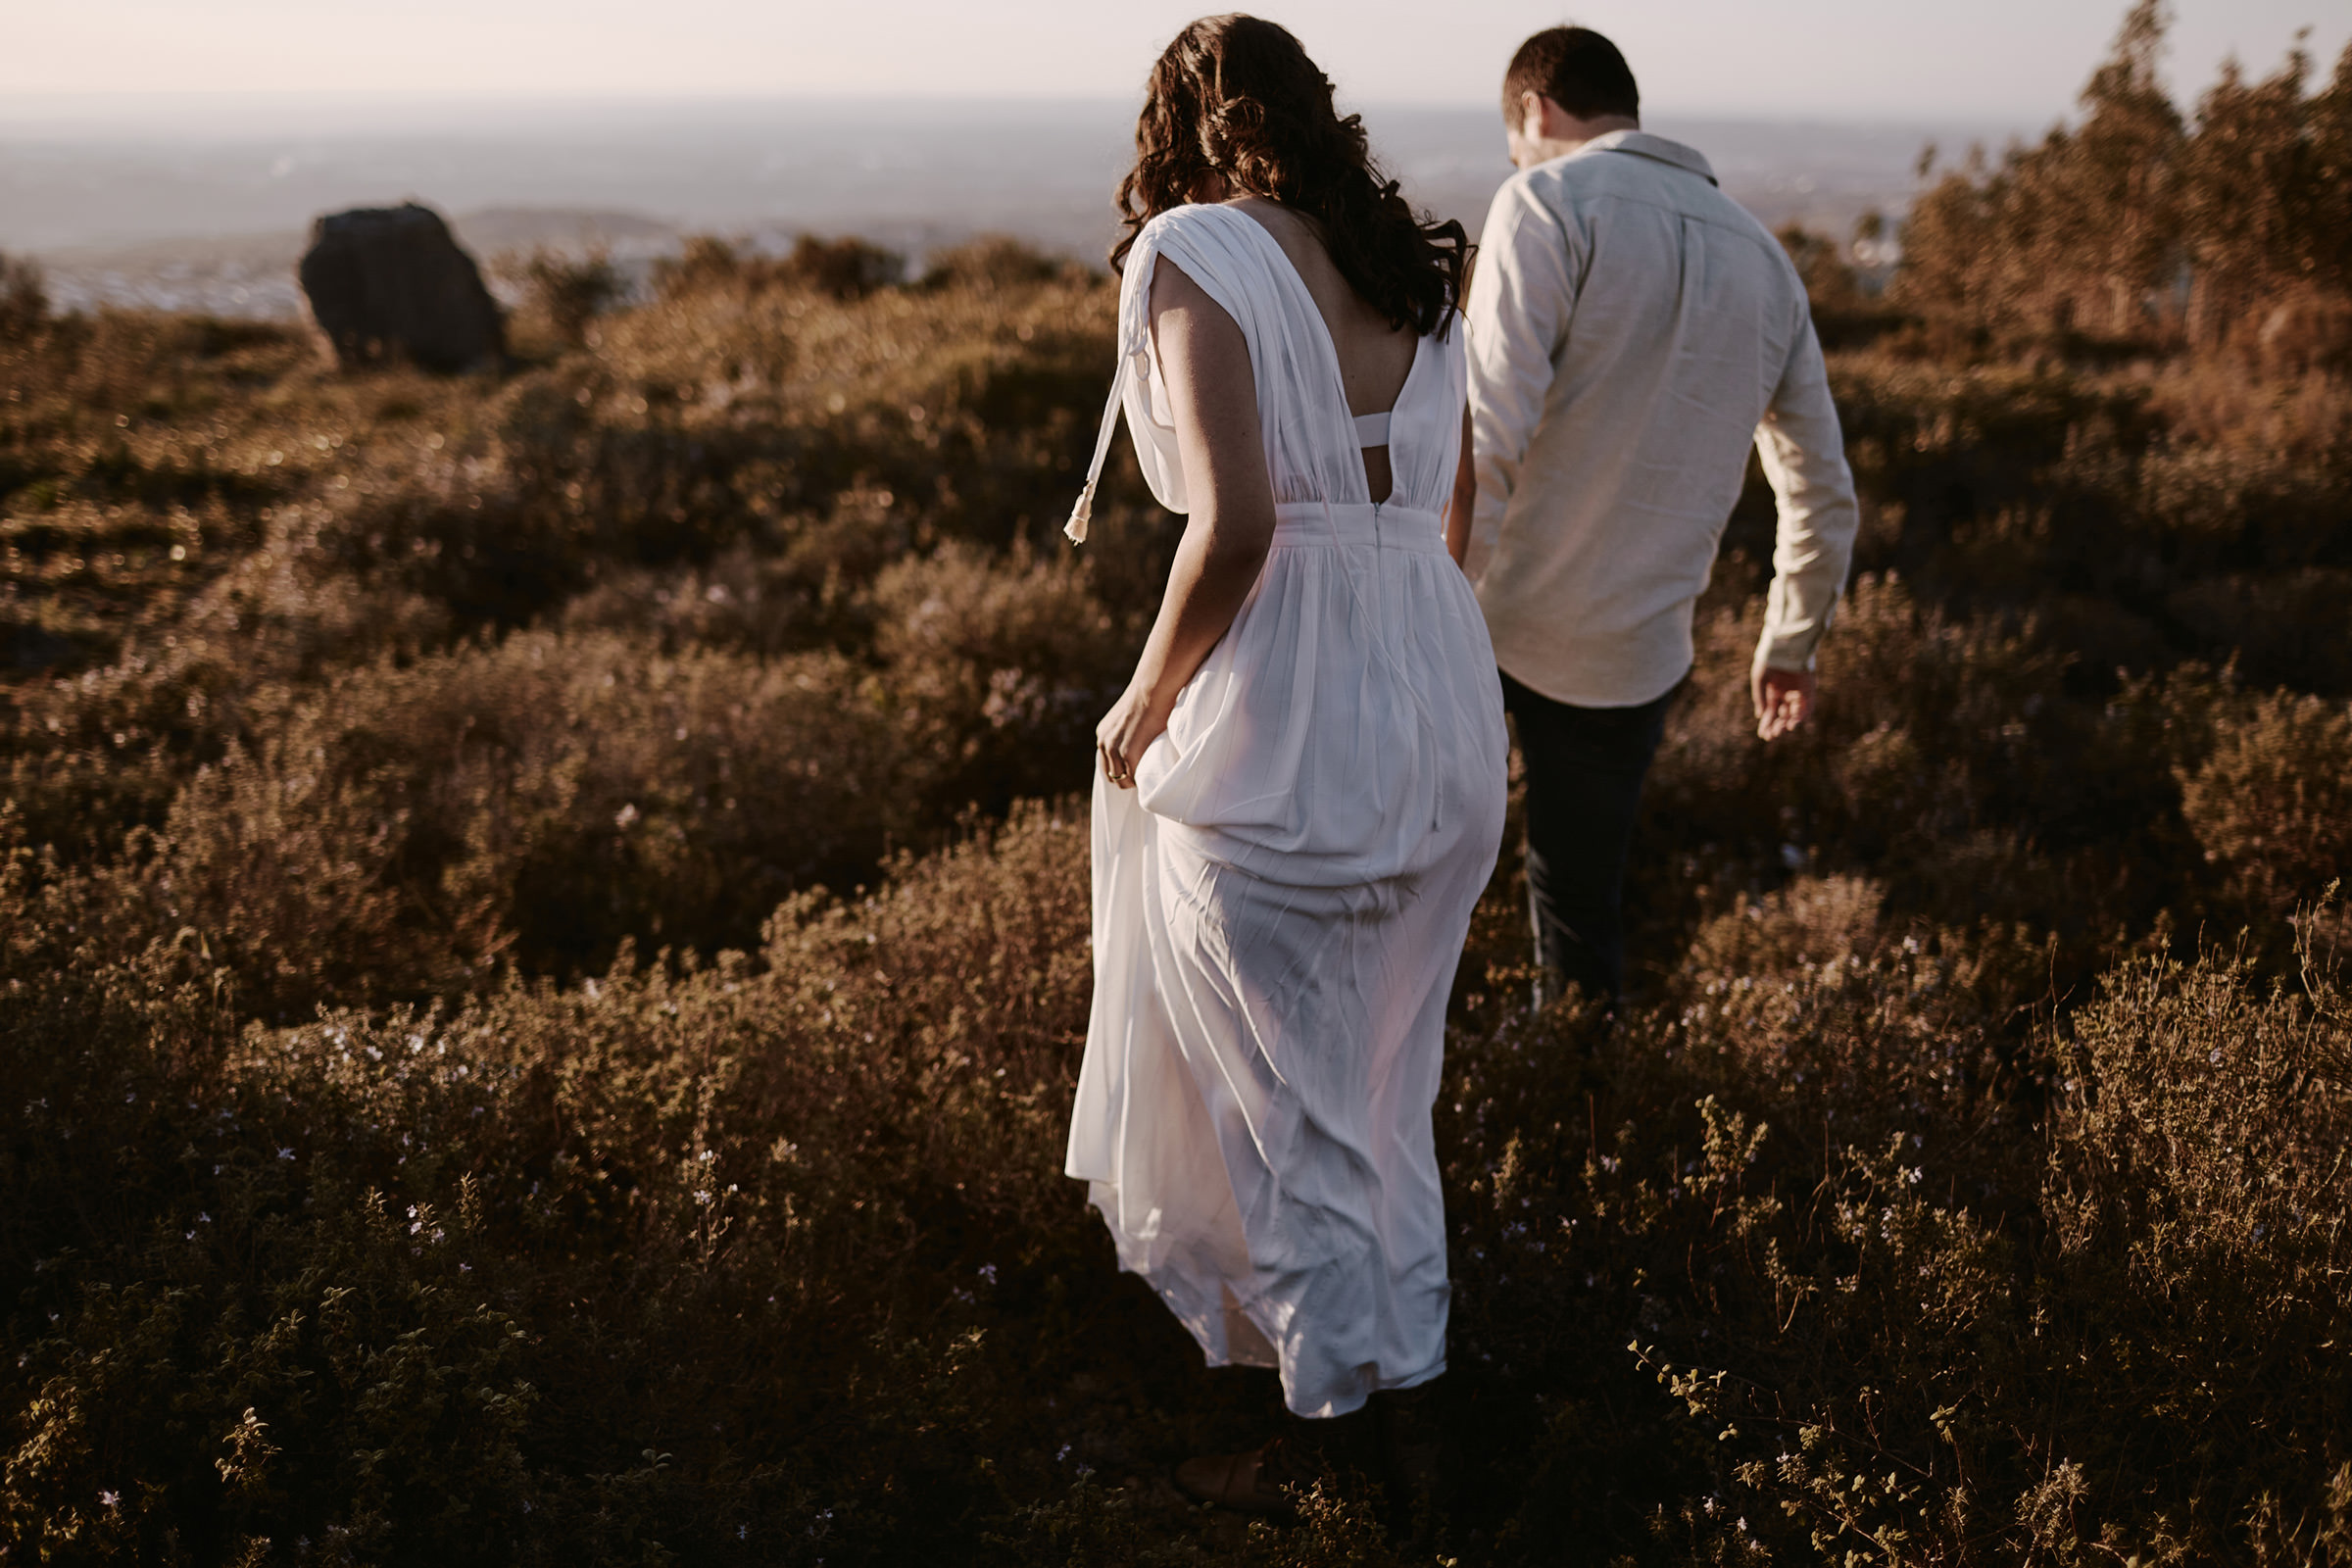 sessao fotografica solteiros documental namoro nuno lima fotografia fotografo um momento na vida portugal fatima serra por do sol